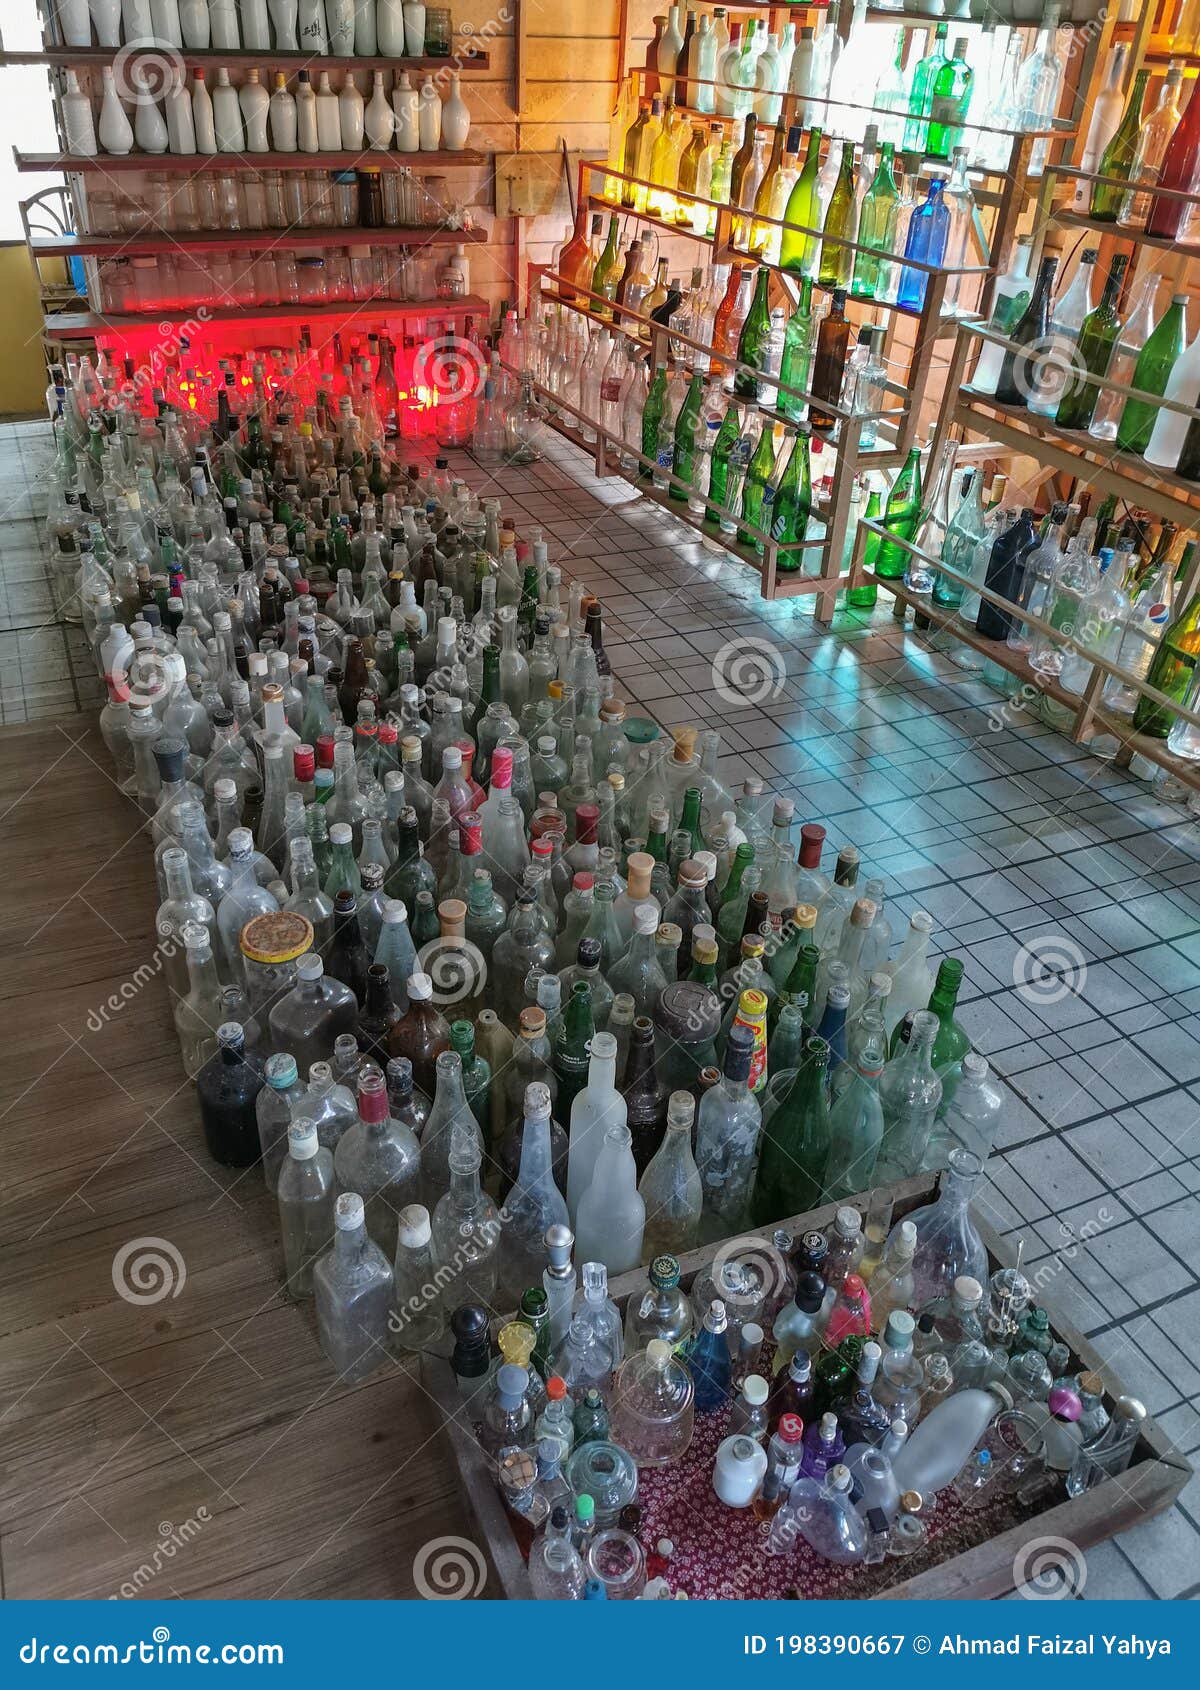 Setiu Terengganu Malaysia 17 De Septiembre De 2020 Miles De Botellas  Desechadas En Exhibición En Casa De Botellas De Vidrio En Ter Fotografía  editorial - Imagen de malayo, costa: 198390667